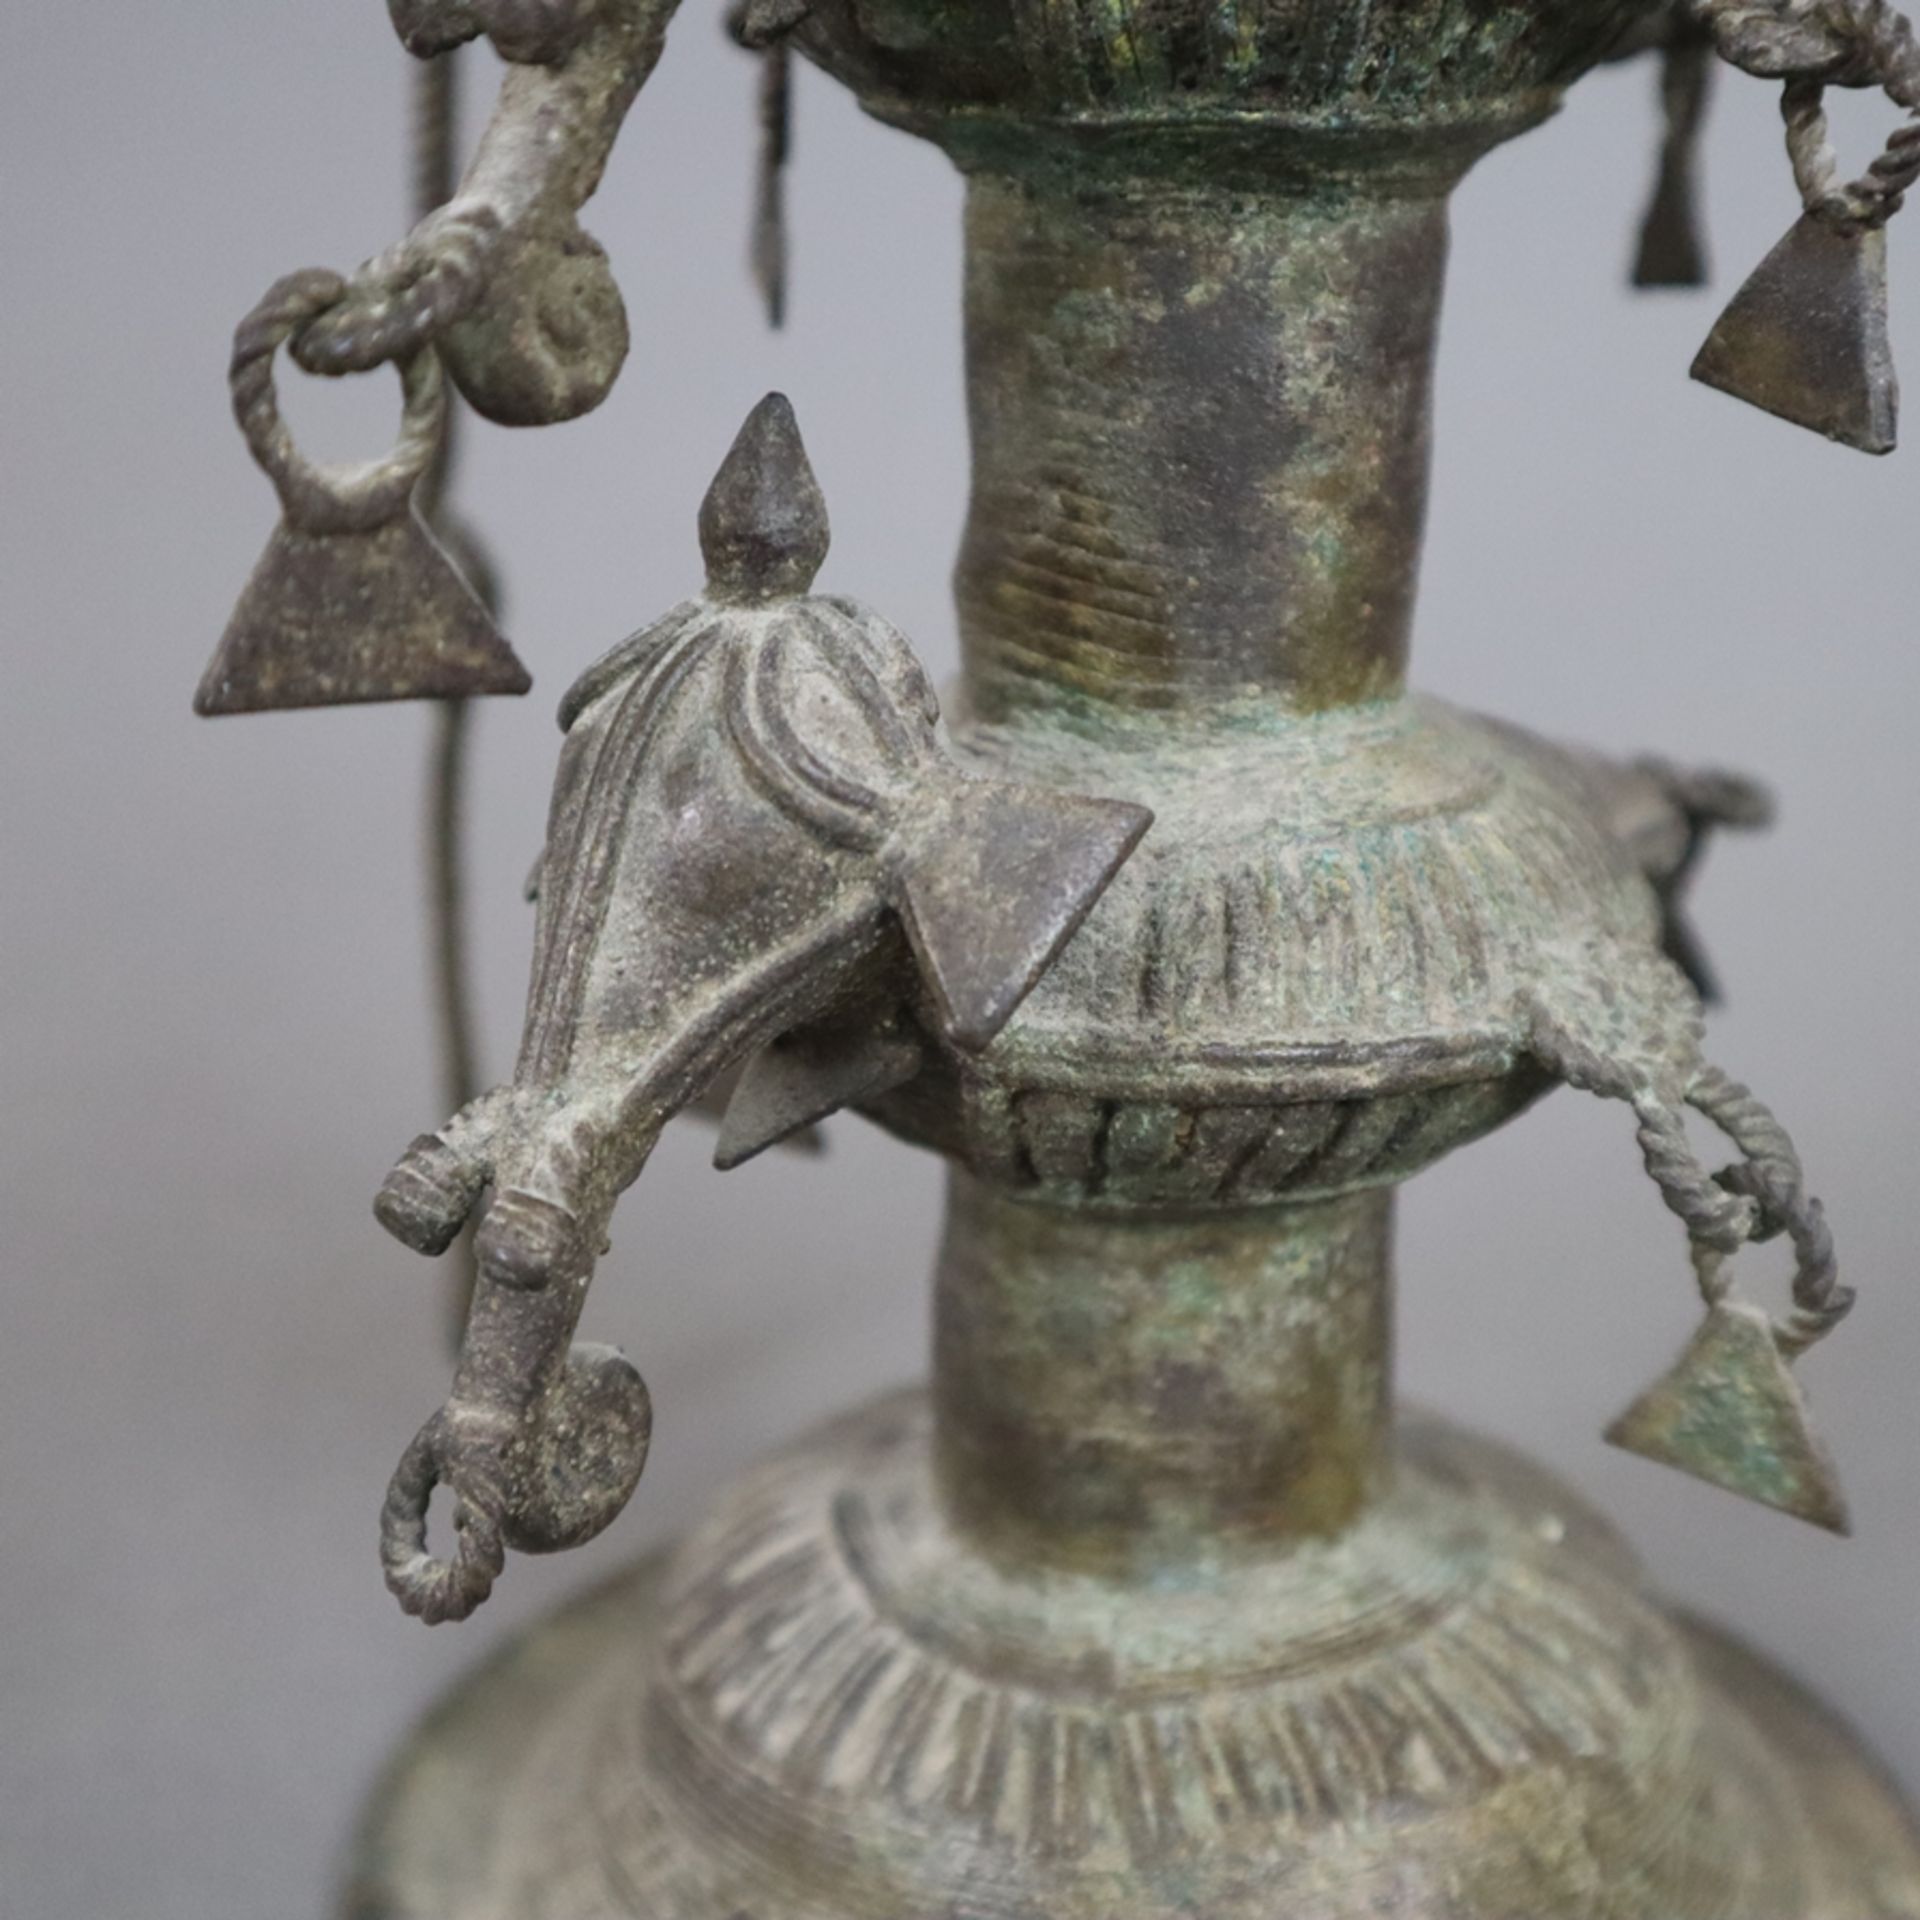 Hohe Öllampe - Indien, Bastar-Region, Bronze mit Alterspatina, über gewölbtem Fuß gegliederter Scha - Bild 7 aus 9